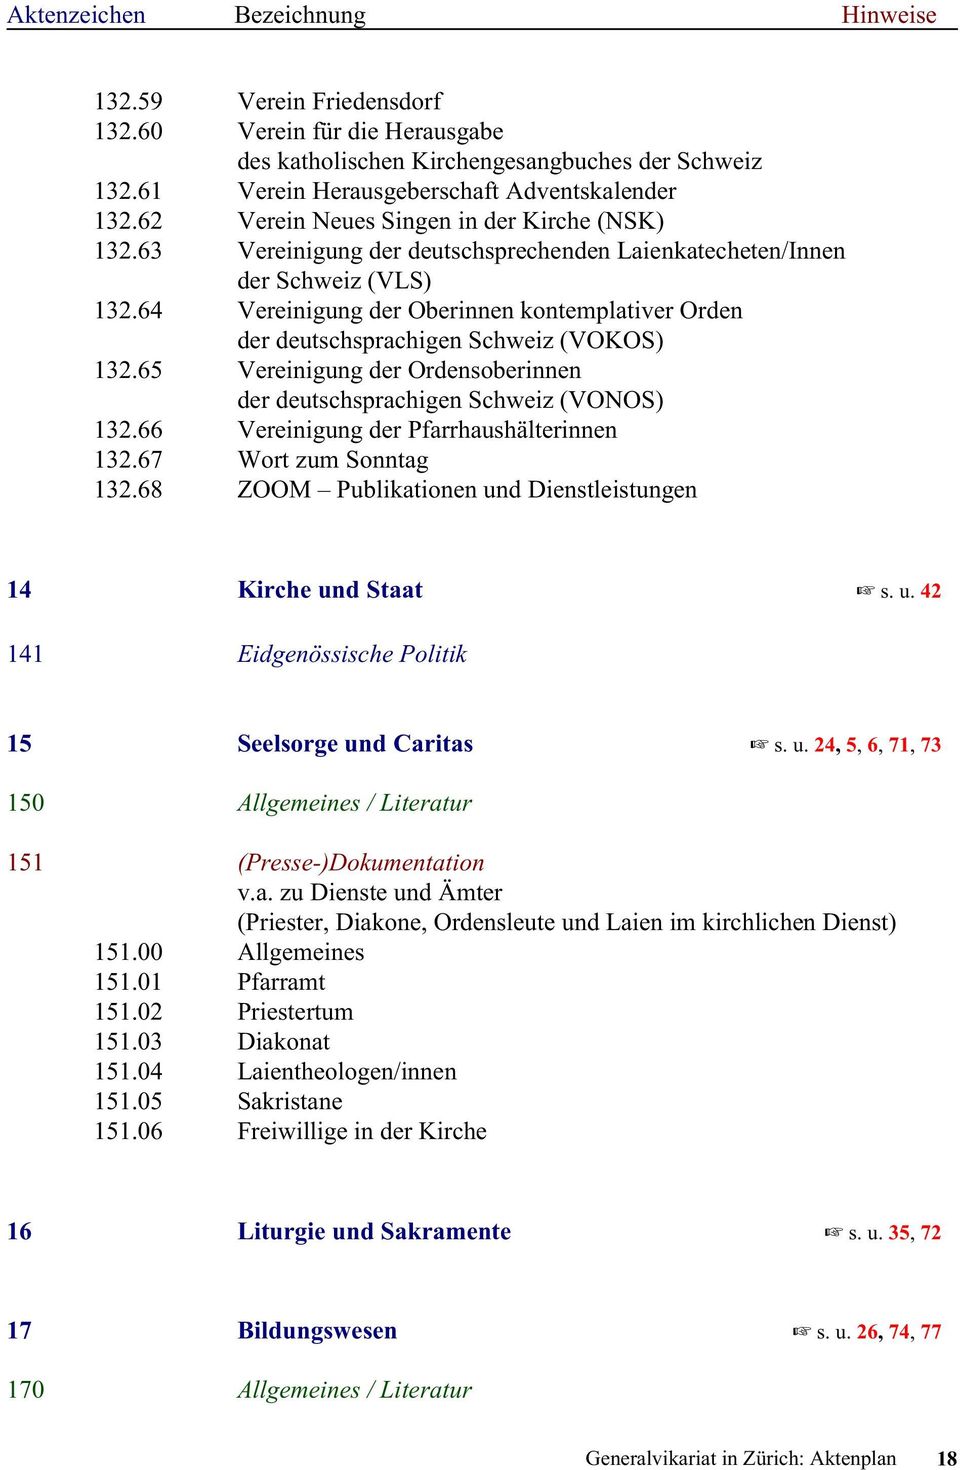 64 Vereinigung der Oberinnen kontemplativer Orden der deutschsprachigen Schweiz (VOKOS) 132.65 Vereinigung der Ordensoberinnen der deutschsprachigen Schweiz (VONOS) 132.